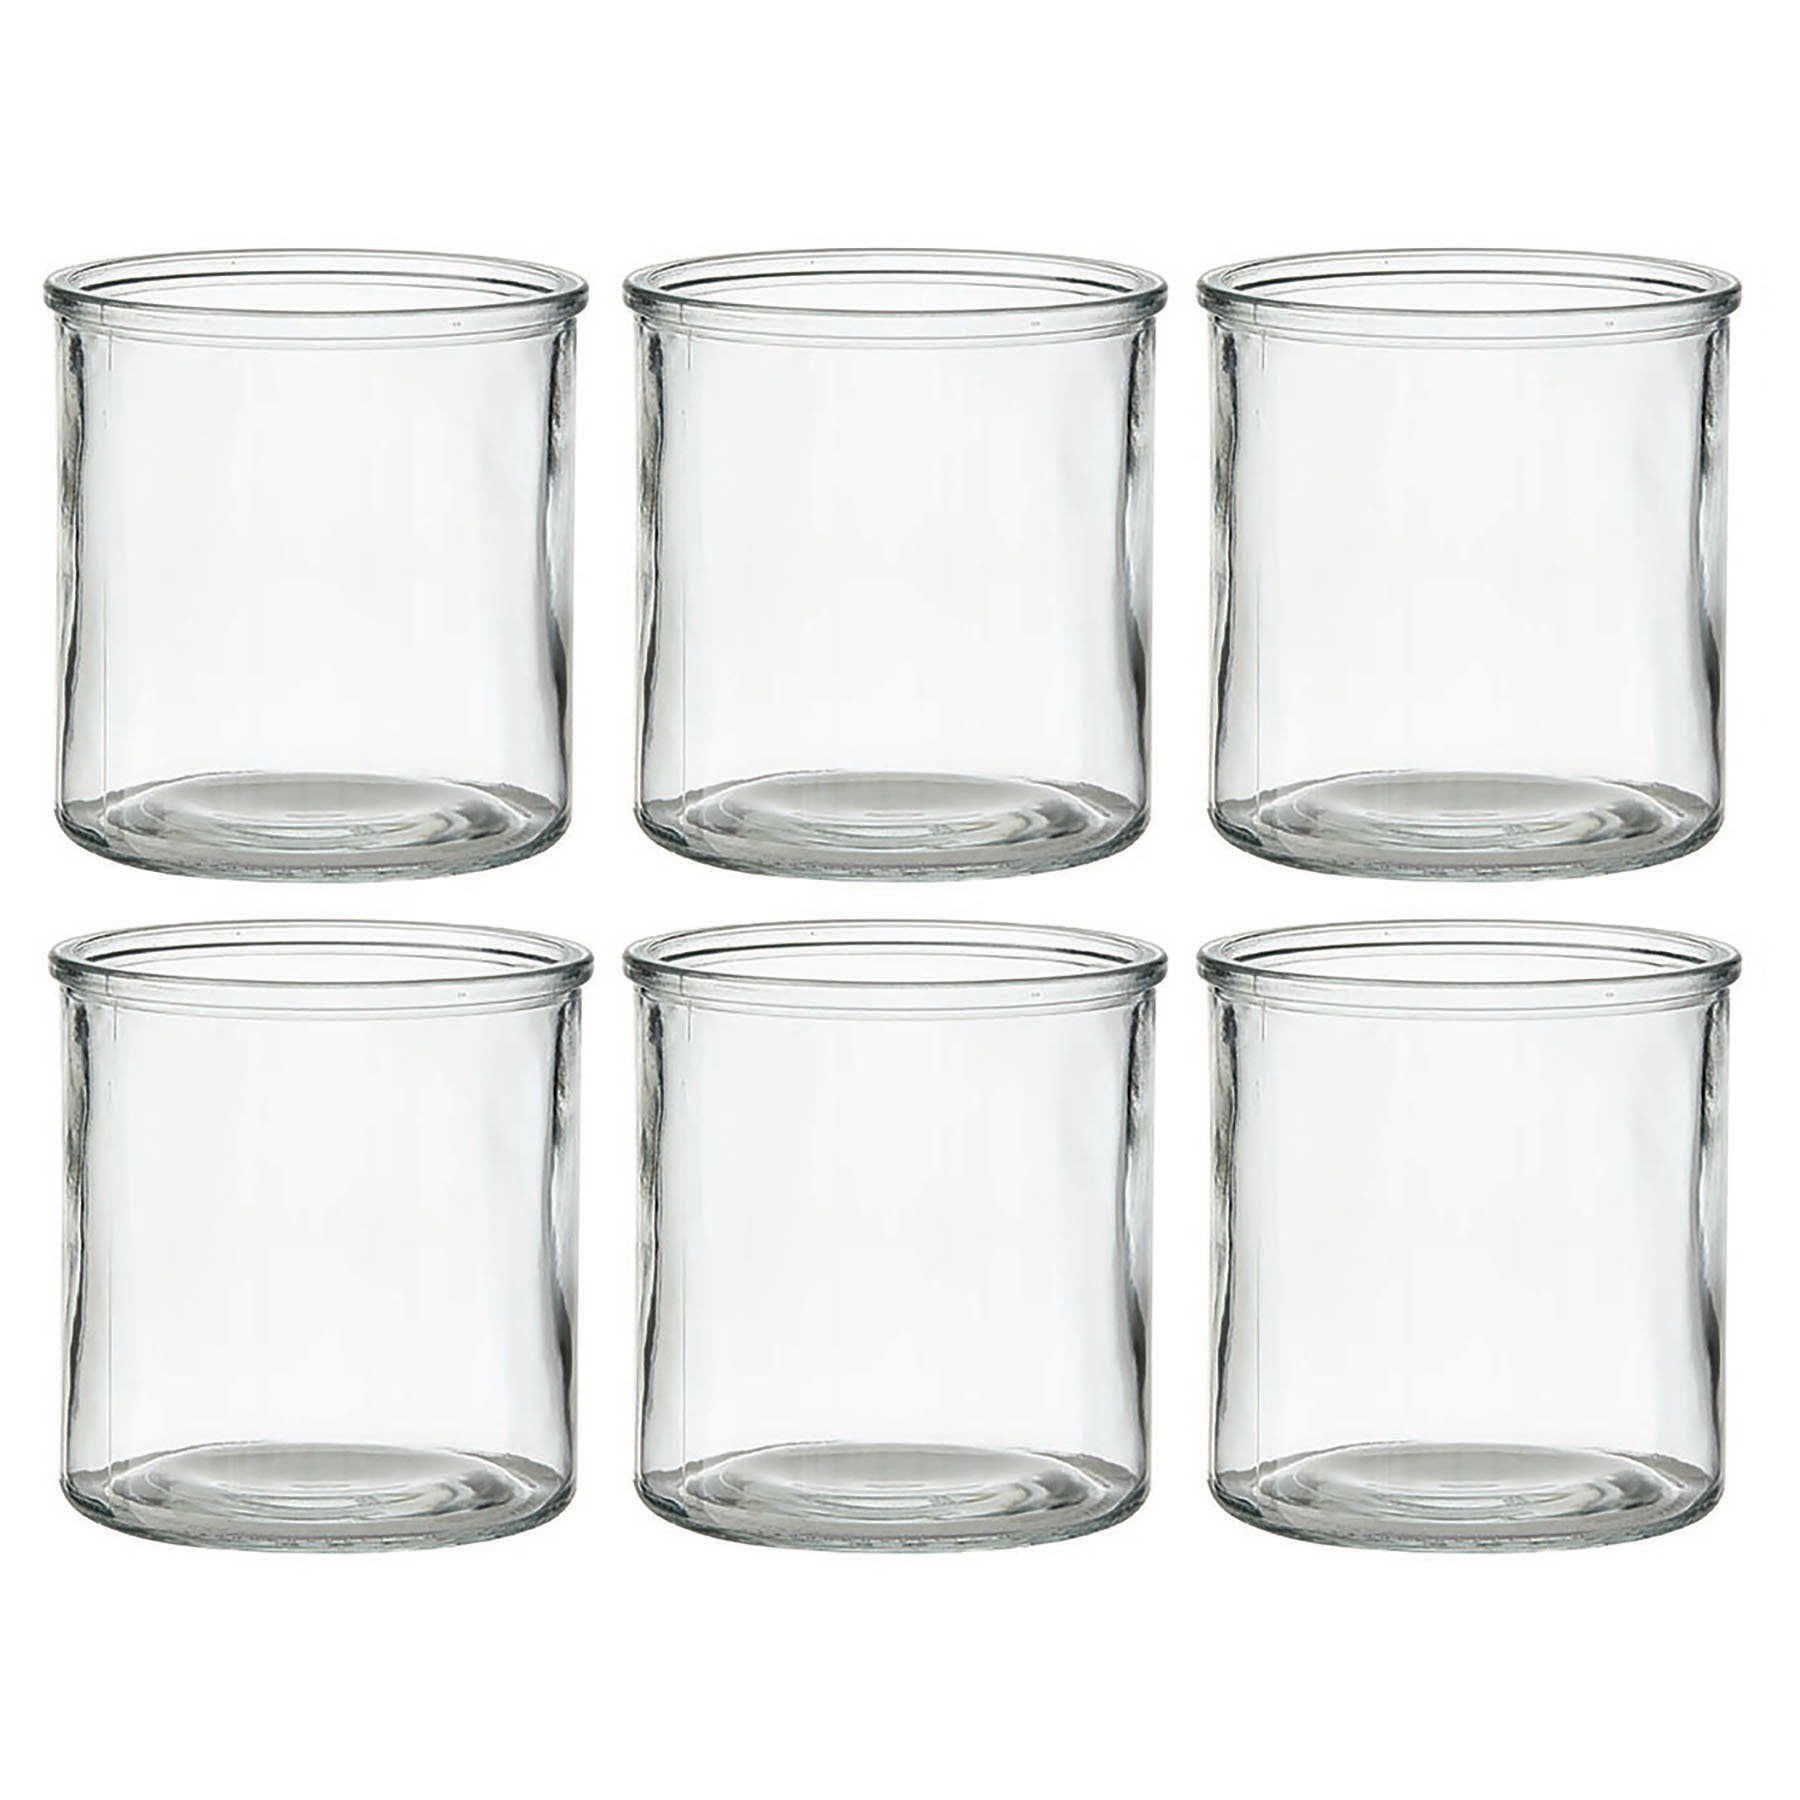 Annastore Windlicht aus Glas in klassischer Zylinderform - Kerzenglas - Teelichtgläser (Gläser für Kerzen Giessen, Kerzengießen, H 10 cm, 6 St), für viele Dekorationen, Runde Kerzengläser